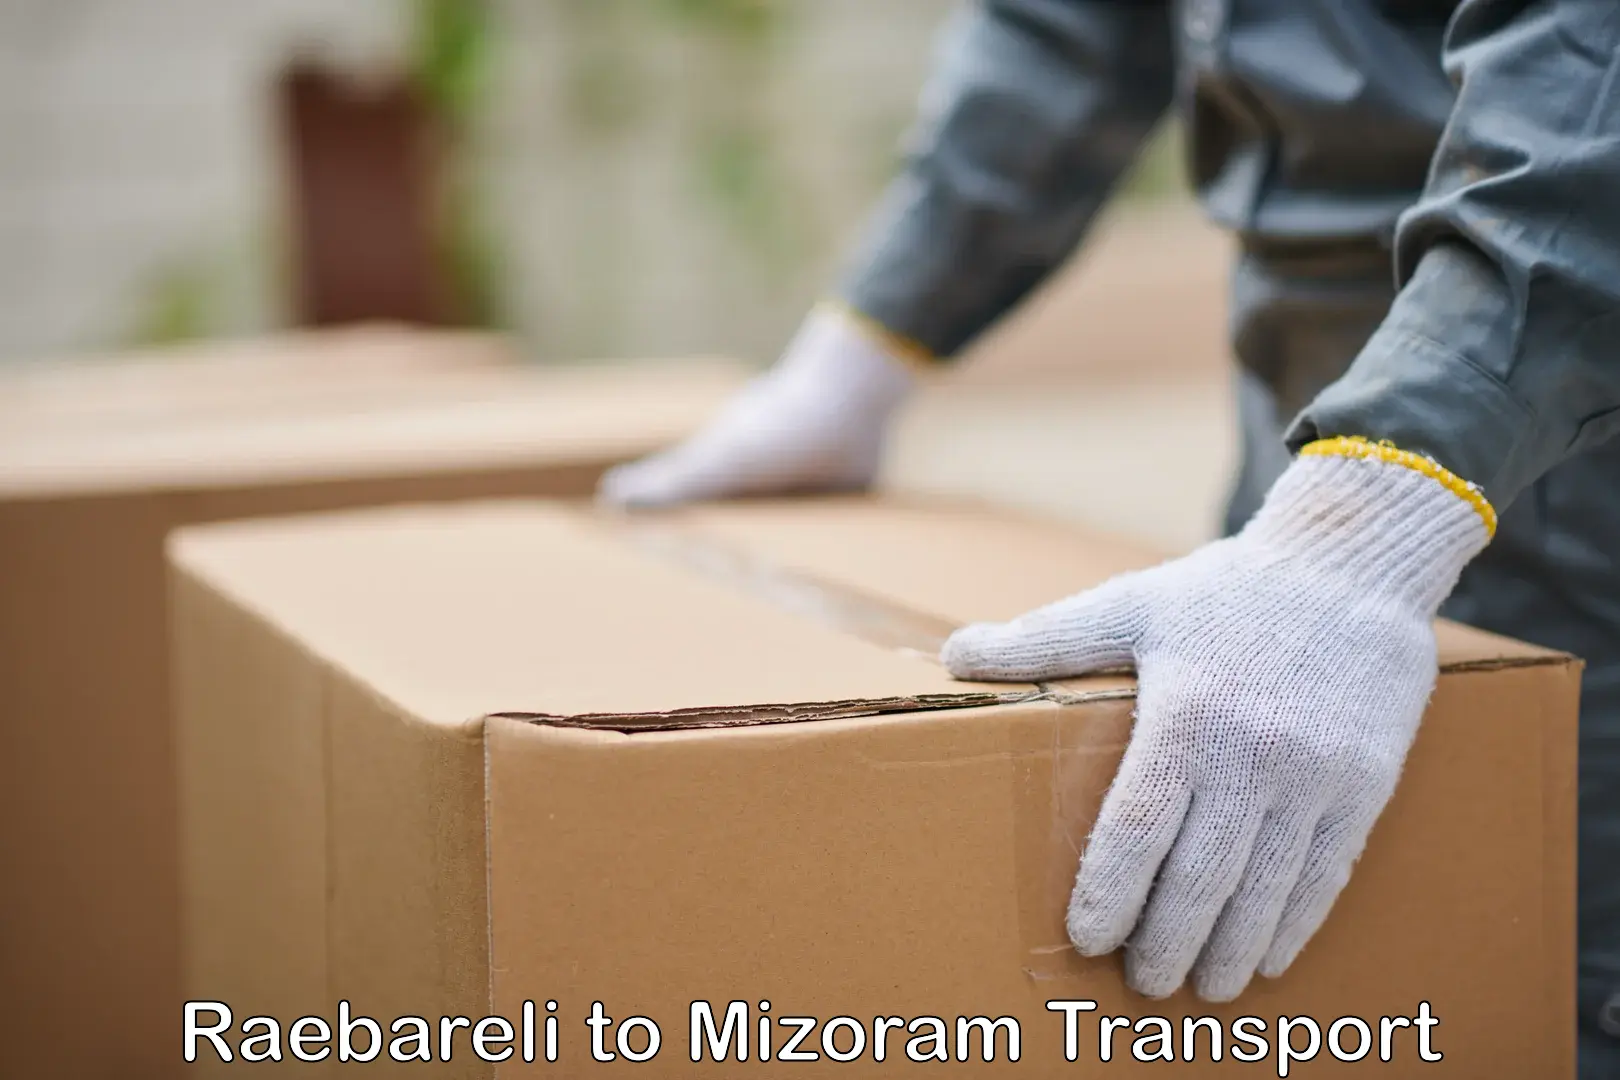 Shipping partner Raebareli to Mizoram